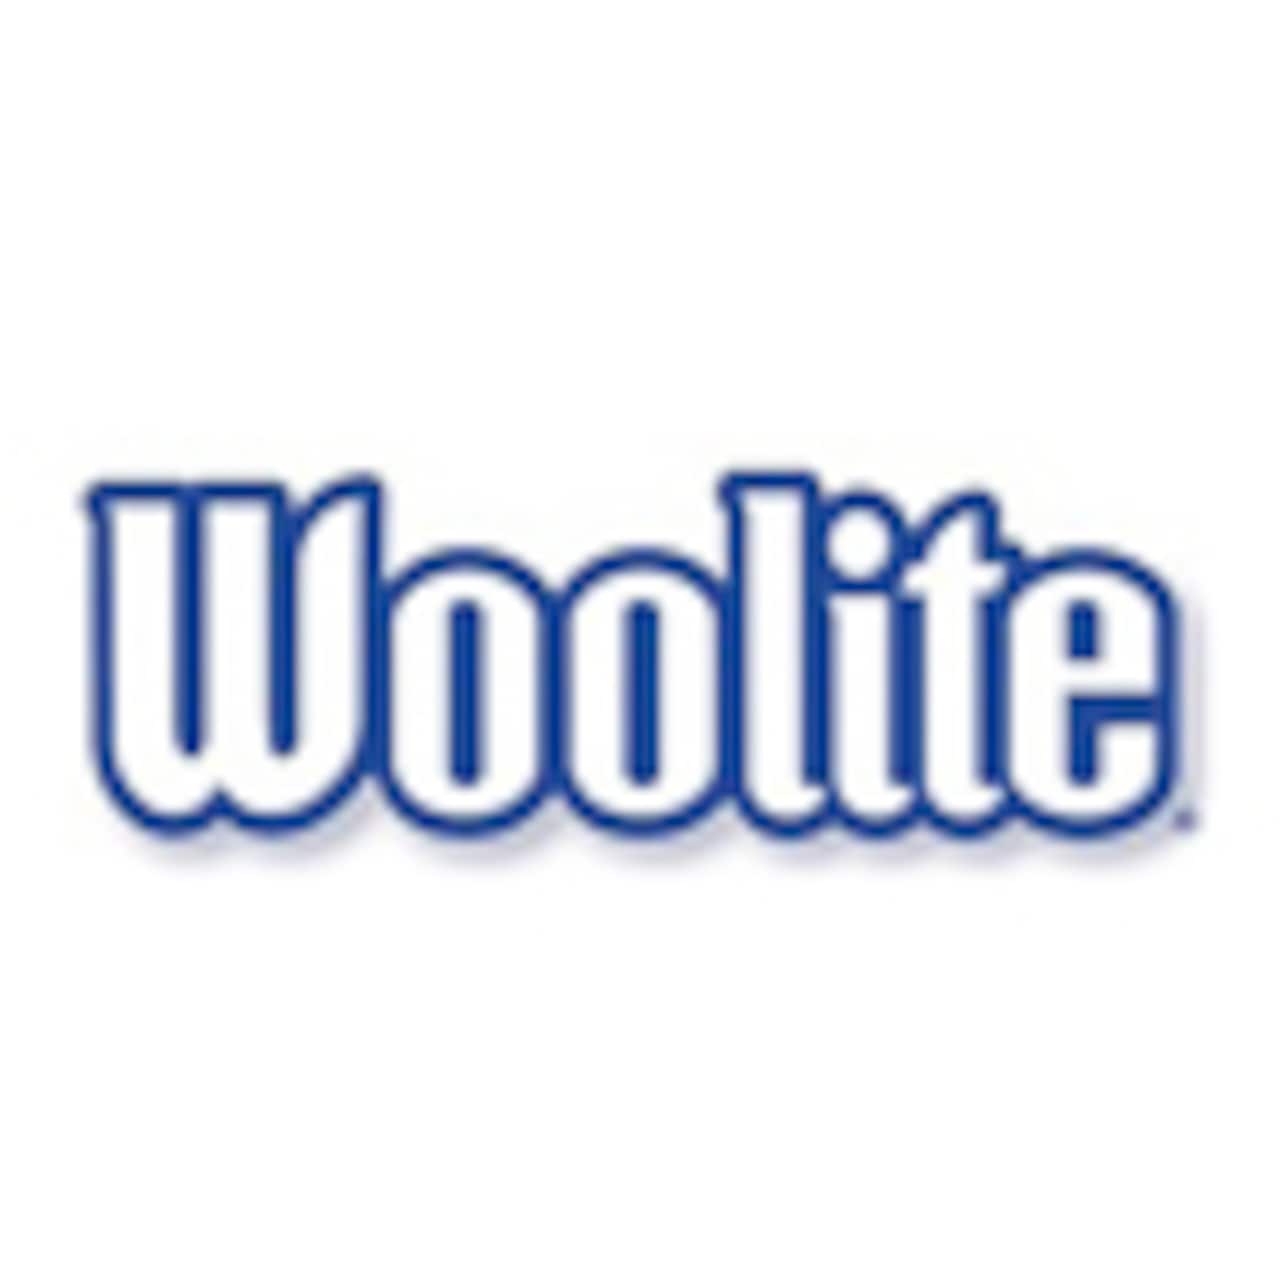 woolite logo